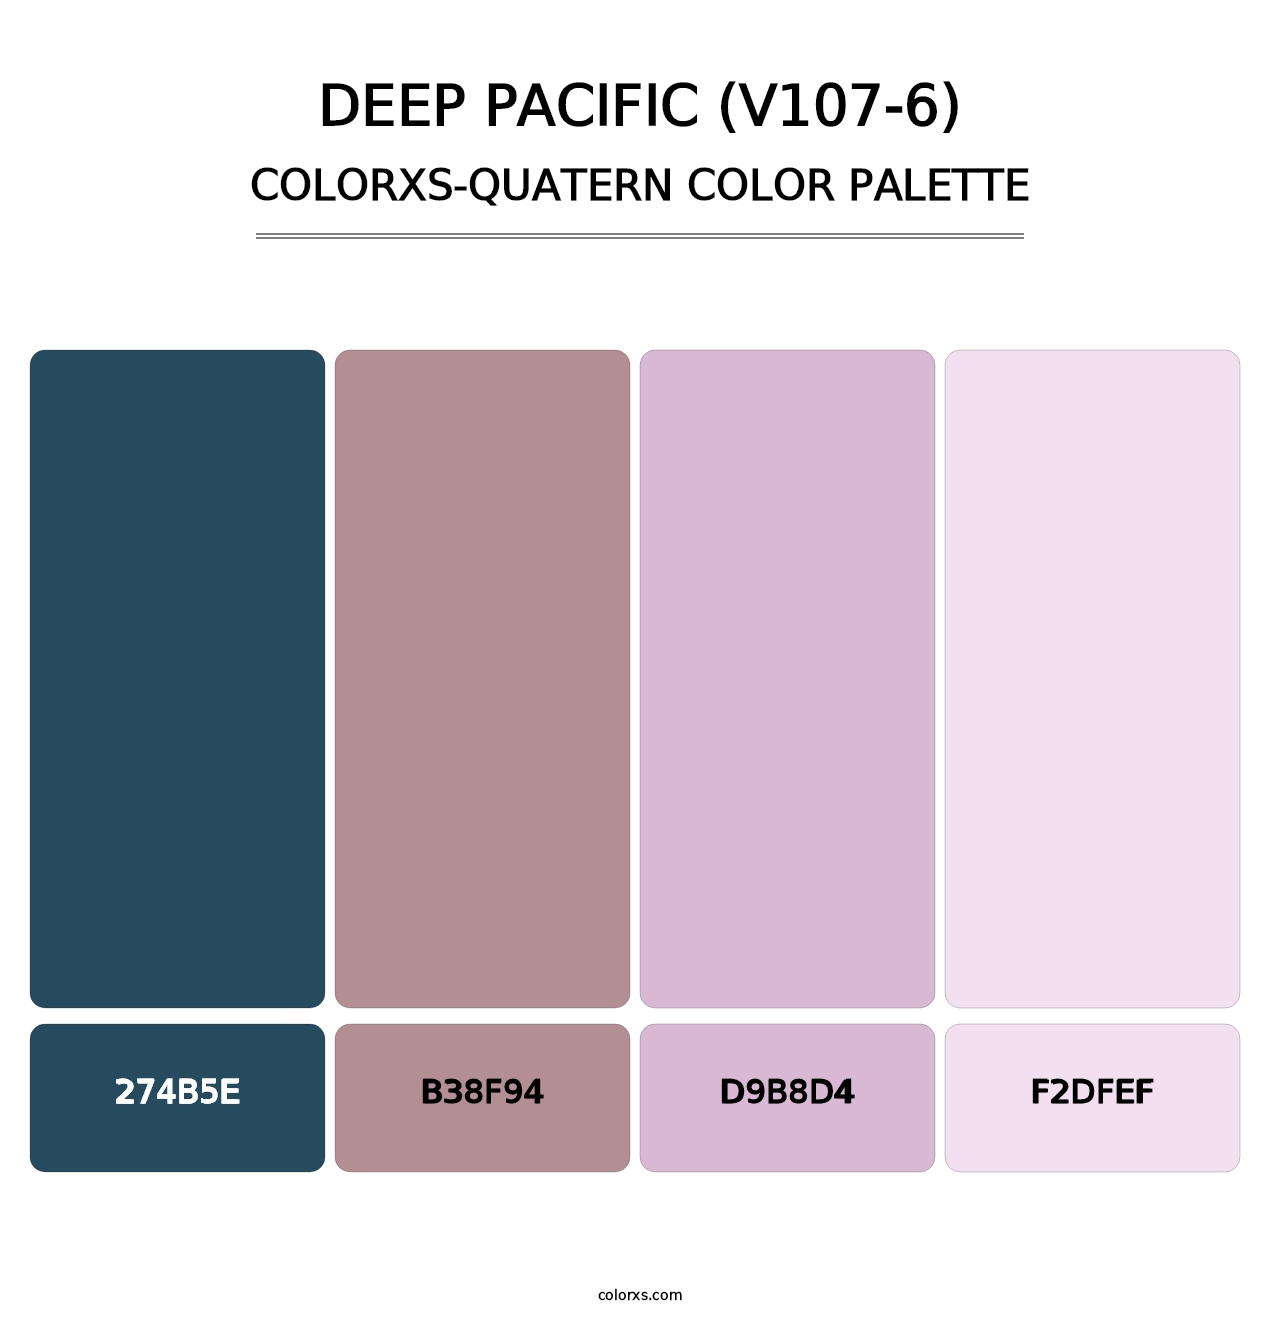 Deep Pacific (V107-6) - Colorxs Quatern Palette